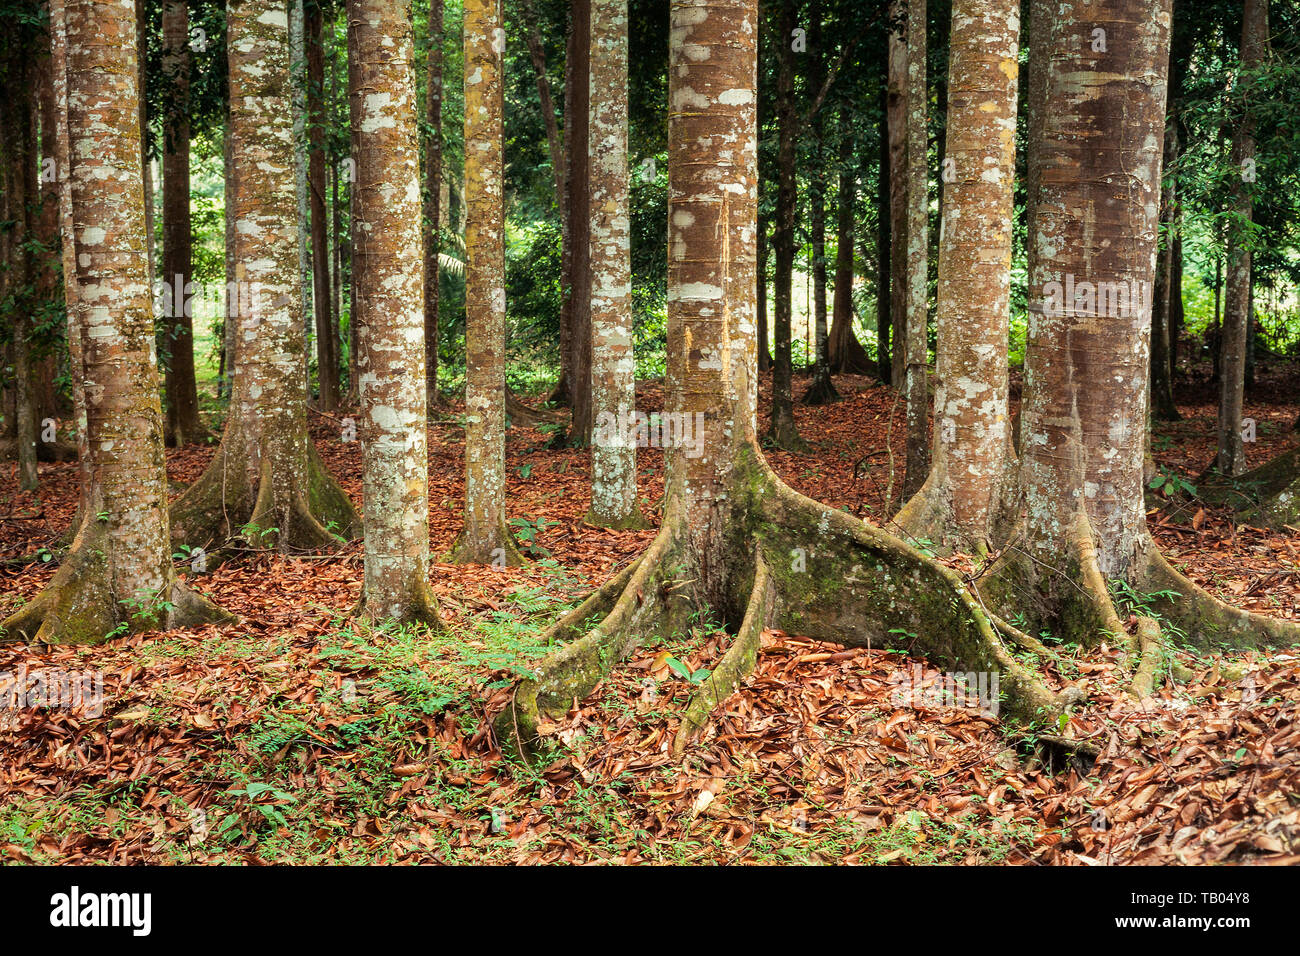 Les arbres des forêts tropicales, des petites racines de l'arbre avec butress & lichens épiphytes poussent sur l'écorce. Banque D'Images